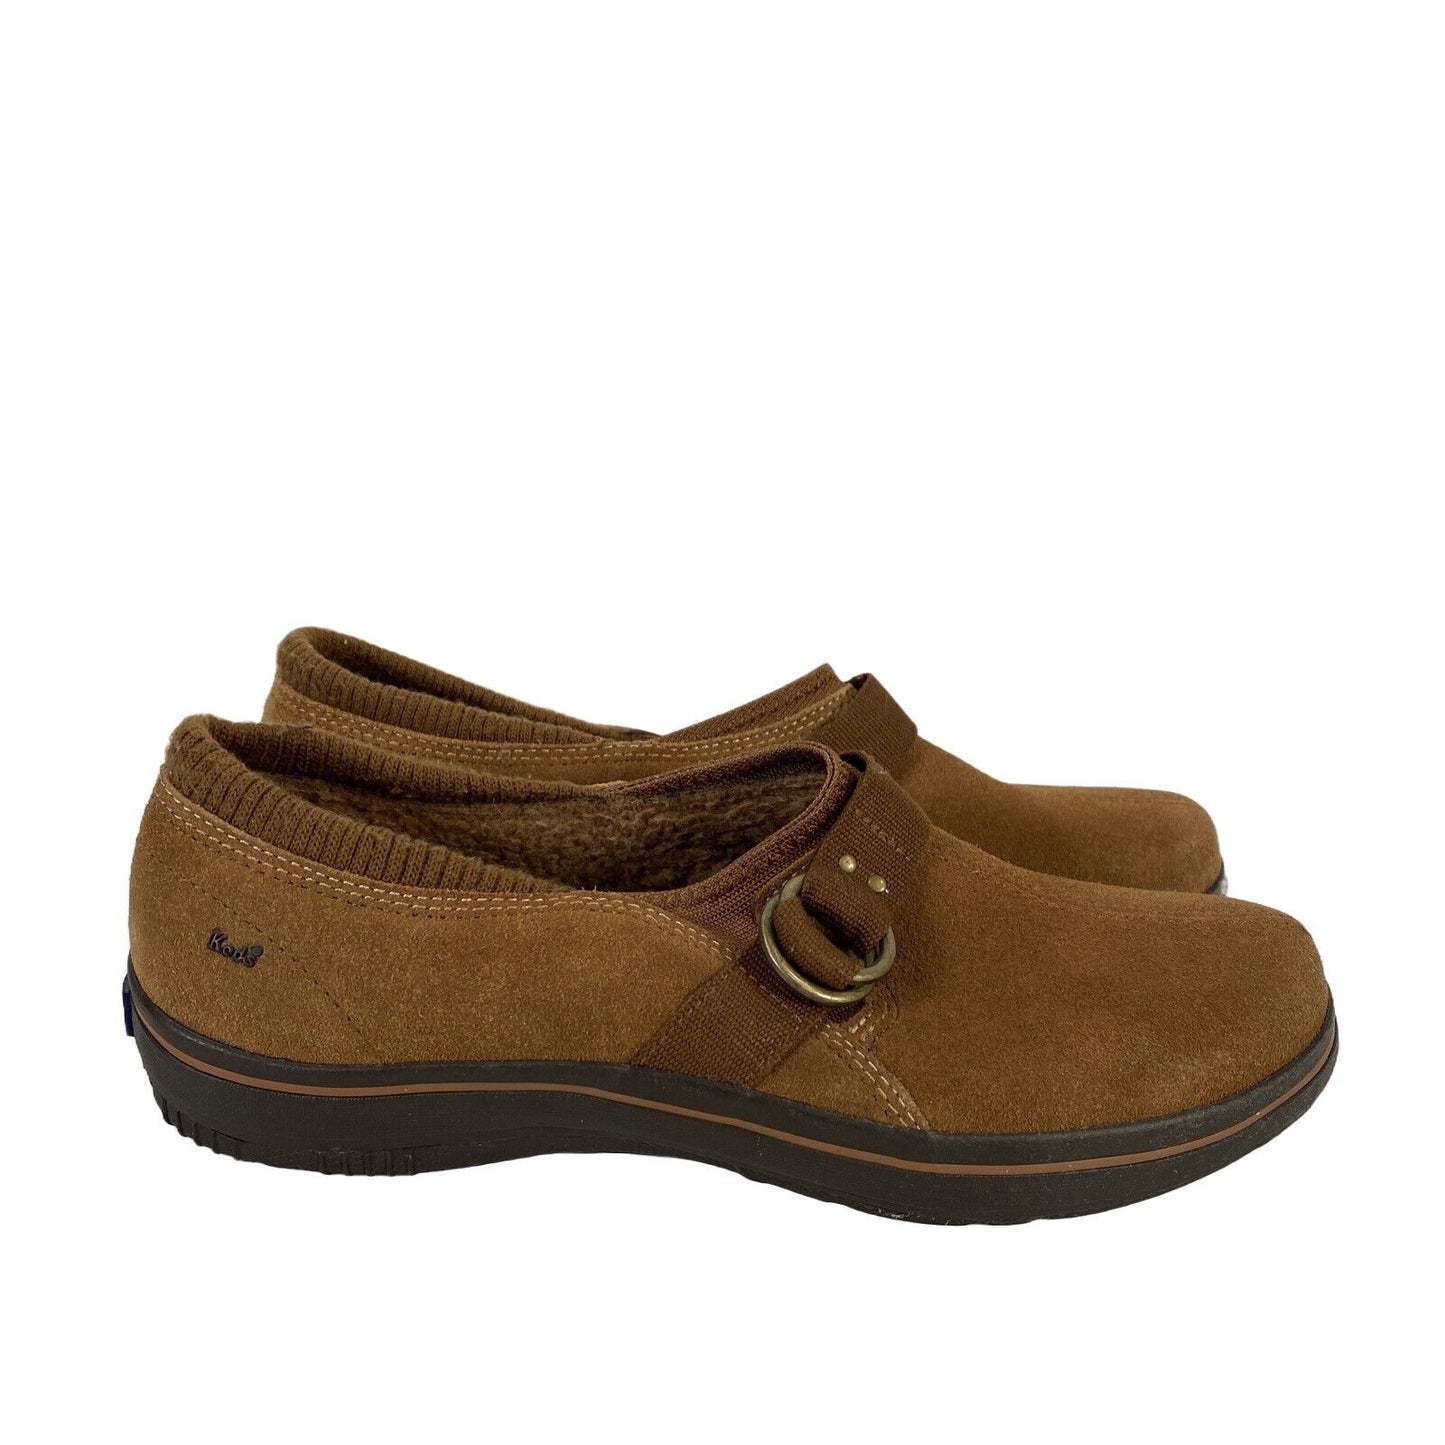 Keds Women's Brown Suede Slip On Fleece Lined Comfort Shoes - 7.5